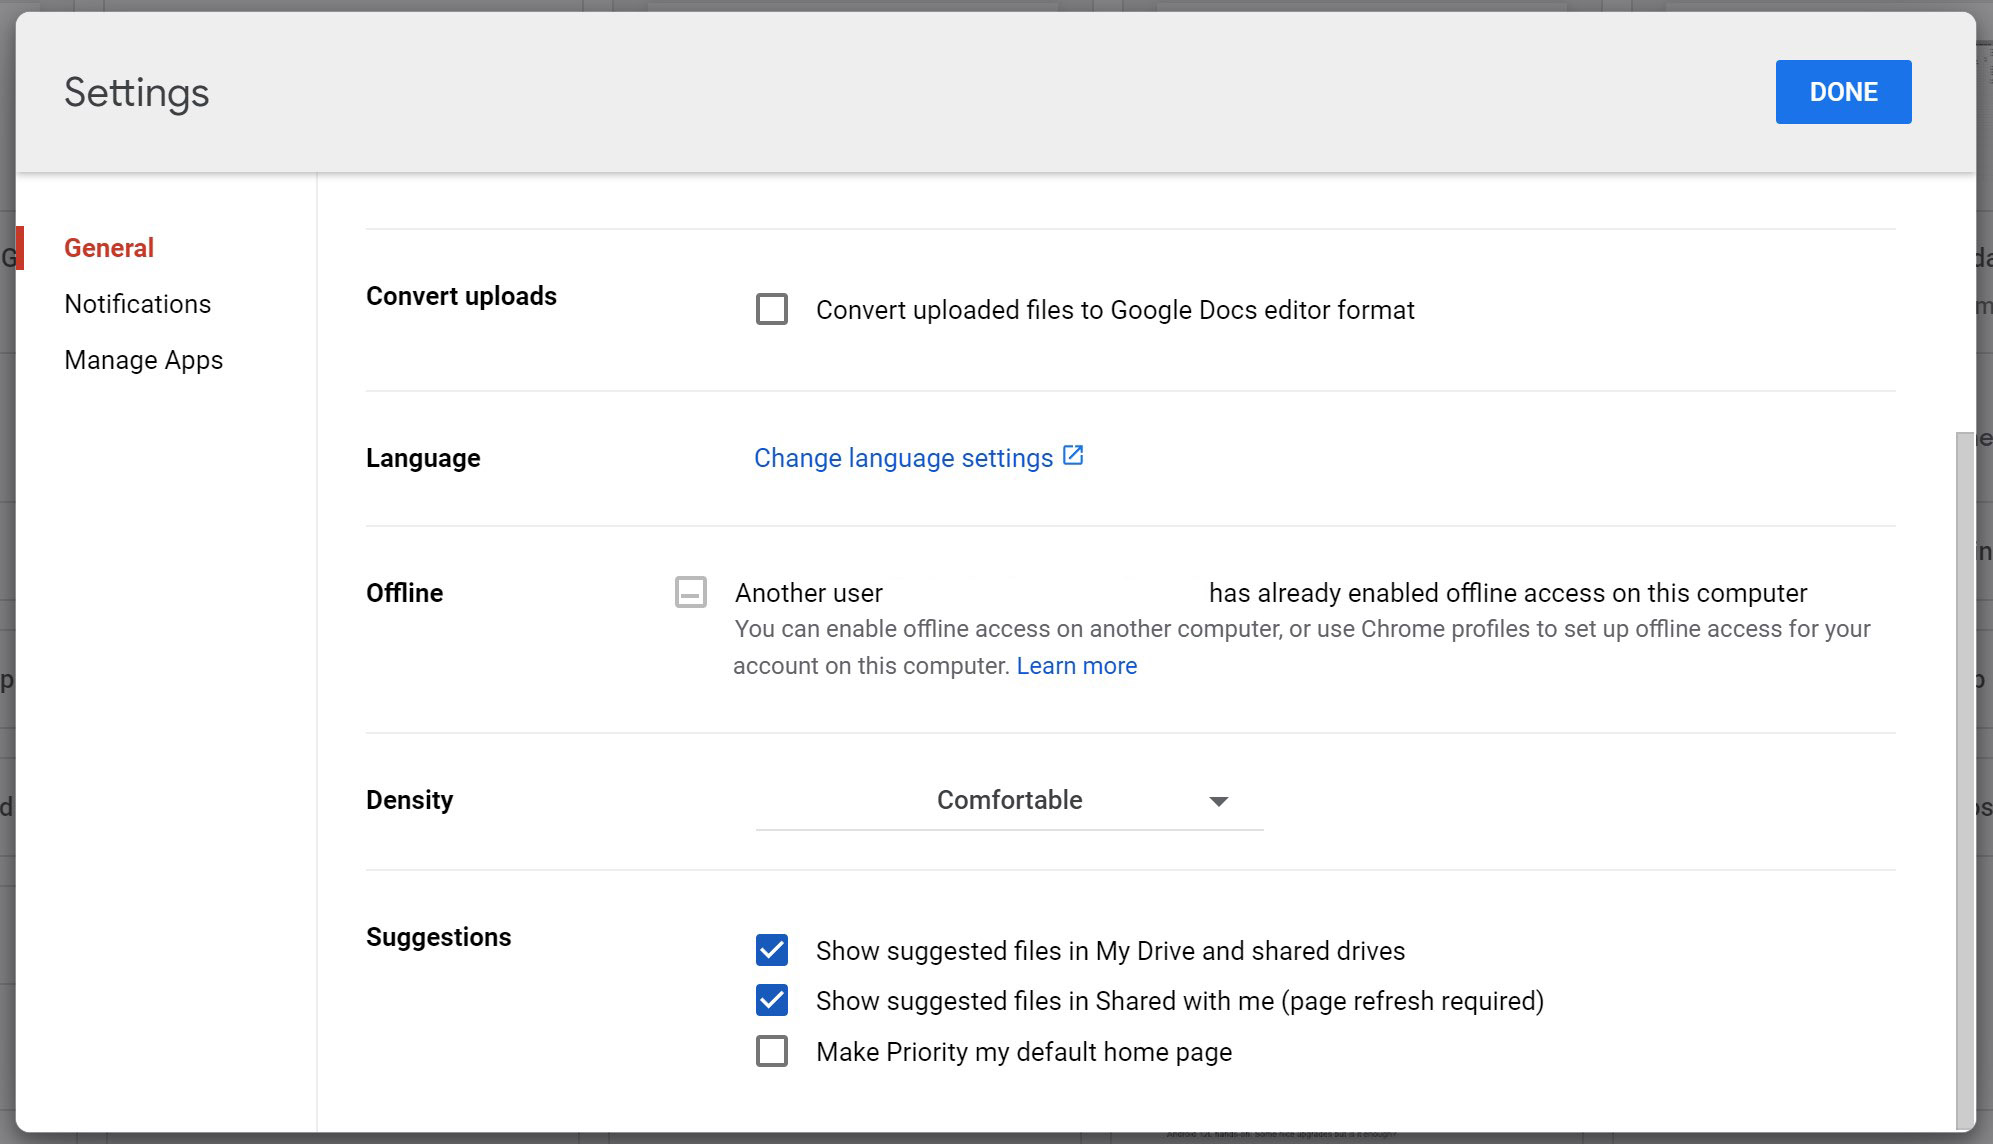 Se desideri accedere ai file in Google Drive offline, devi ricordarti di abilitare l'impostazione prima di andare da qualche parte senza accesso a Internet.